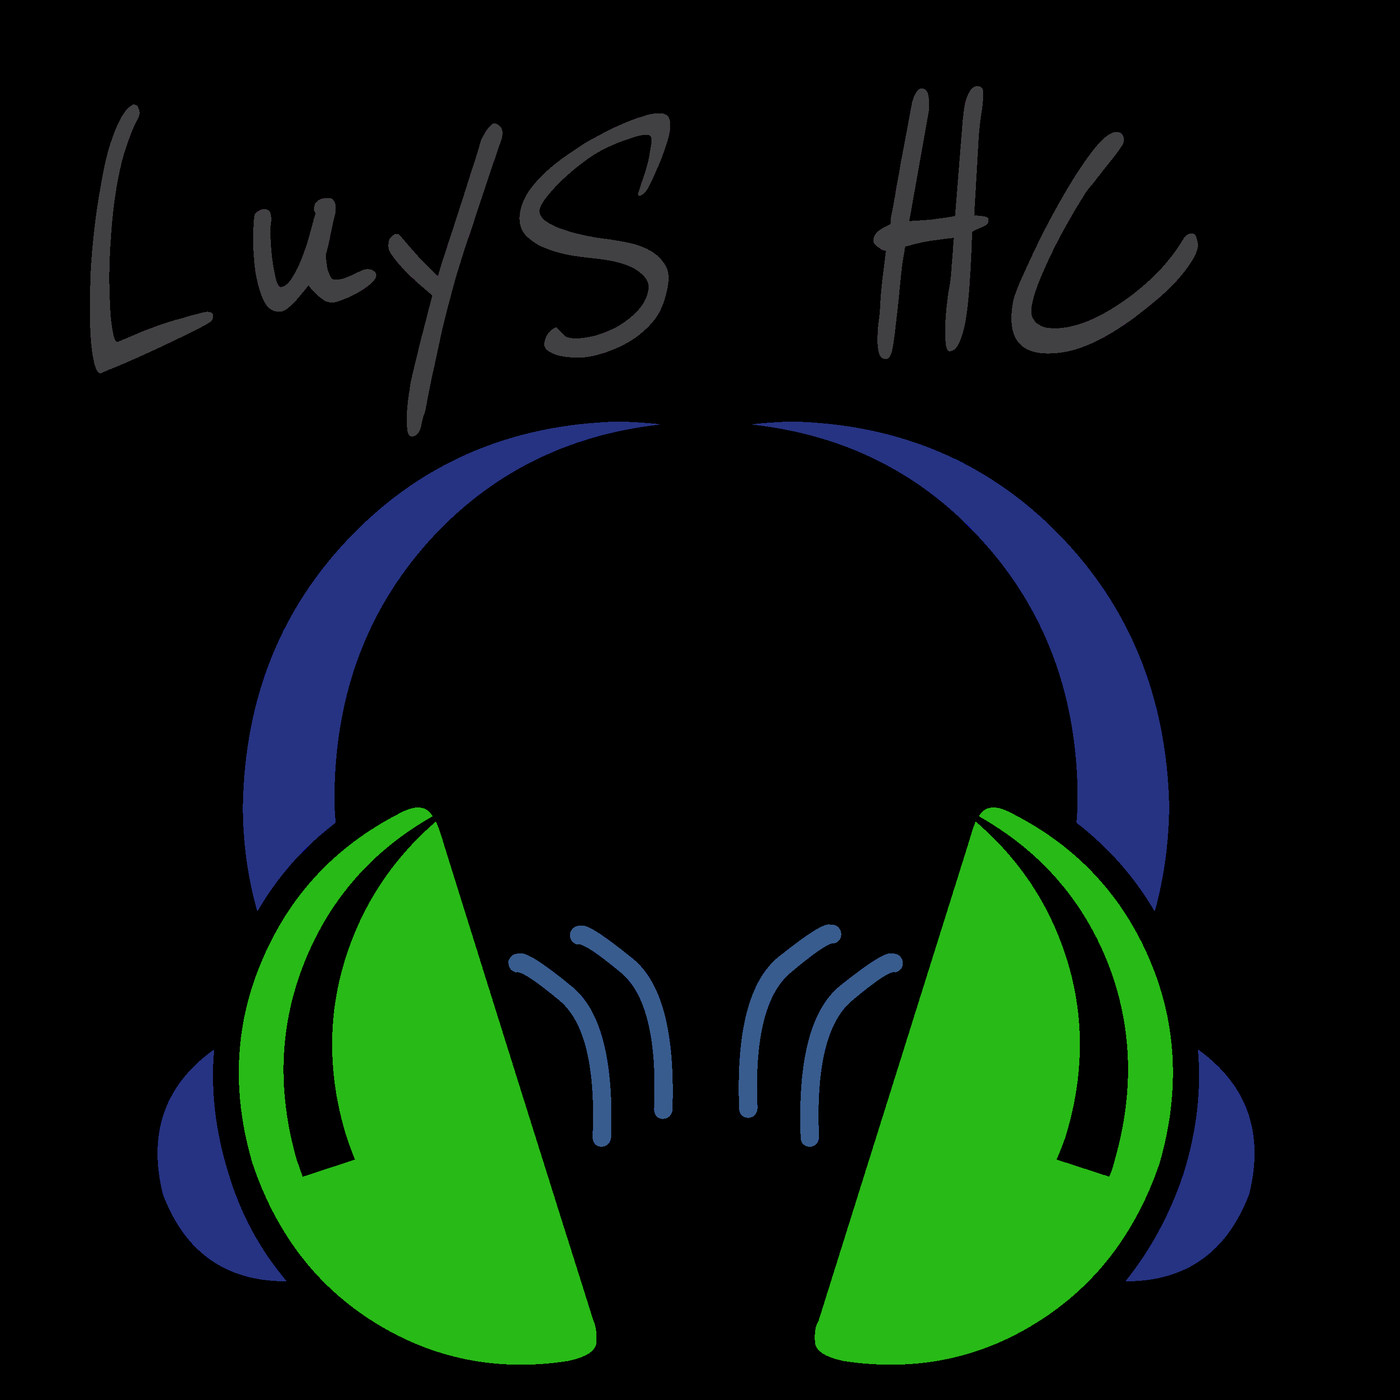 LuyS HC -Junio- 2019